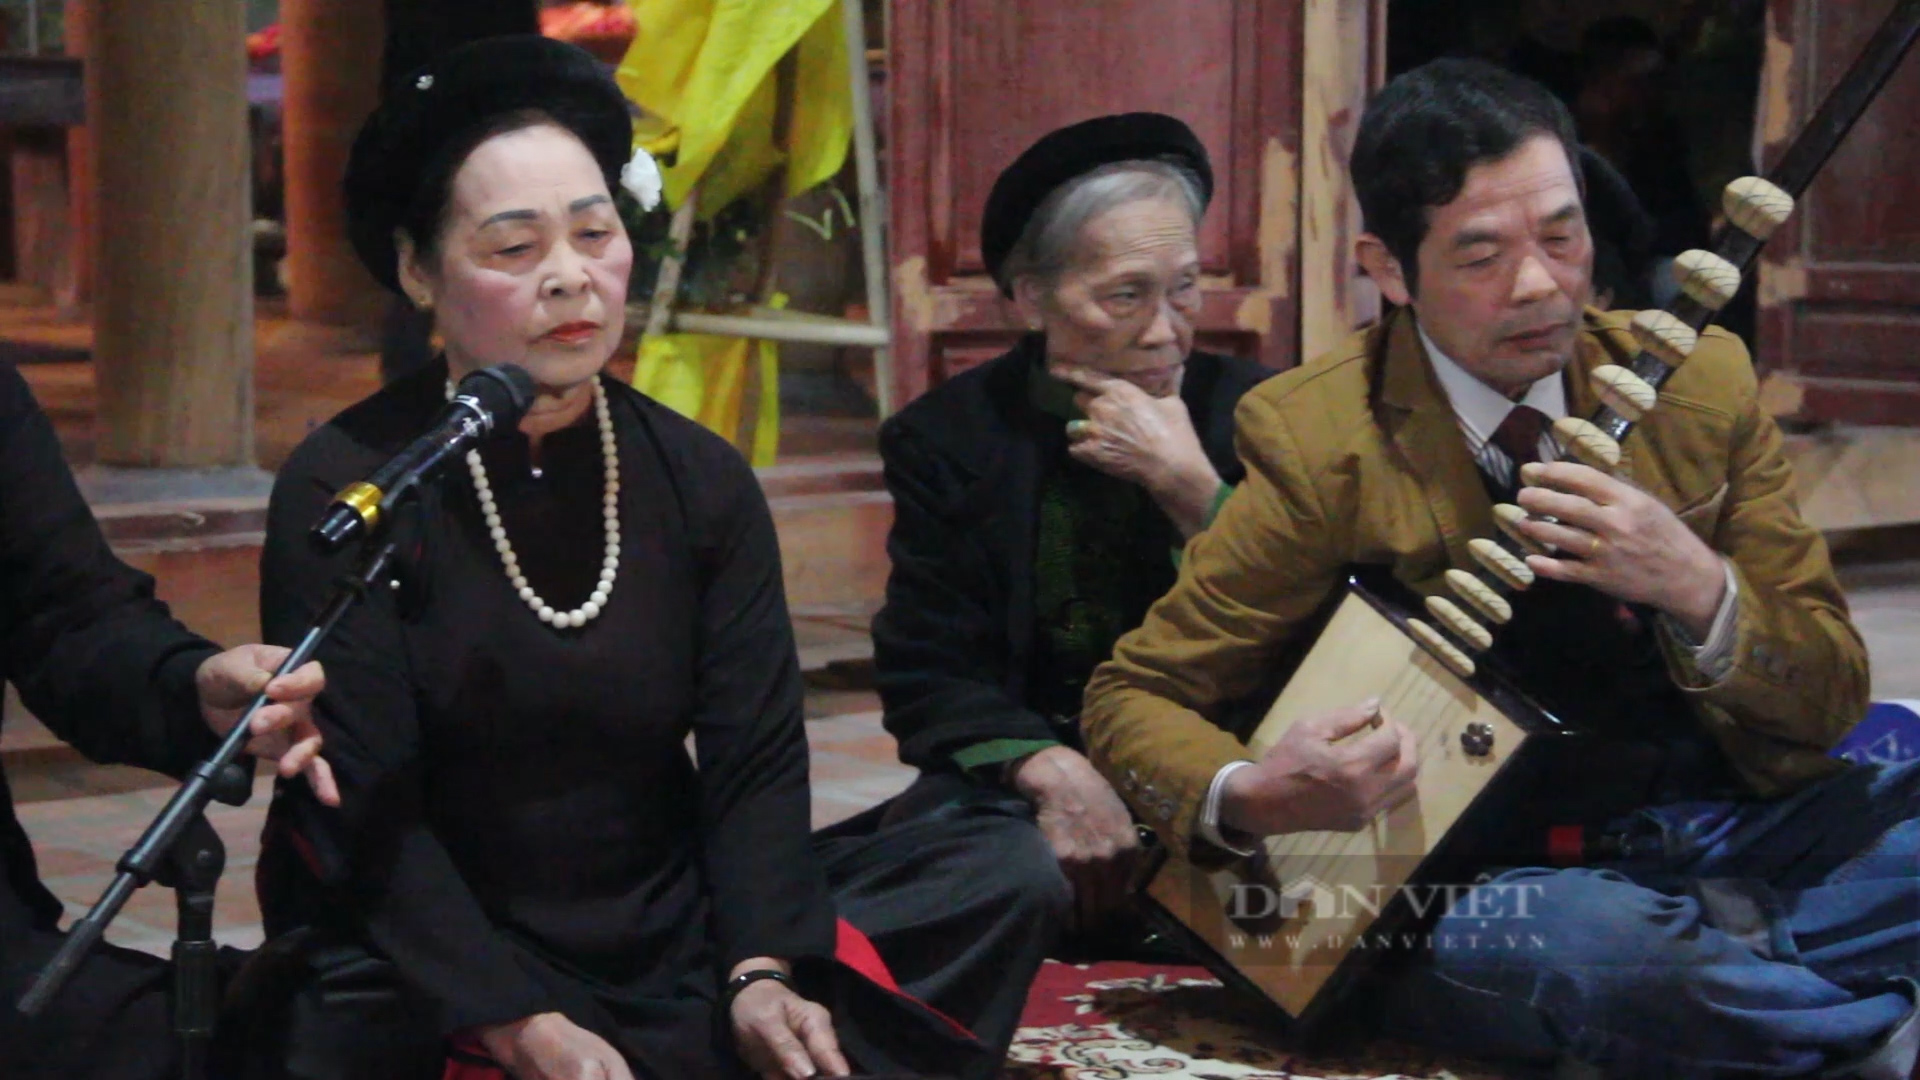 Chuyện về những nghệ nhân ở ngôi làng cổ 600 năm tuổi gìn giữ nghệ thuật hát ca trù - Ảnh 2.